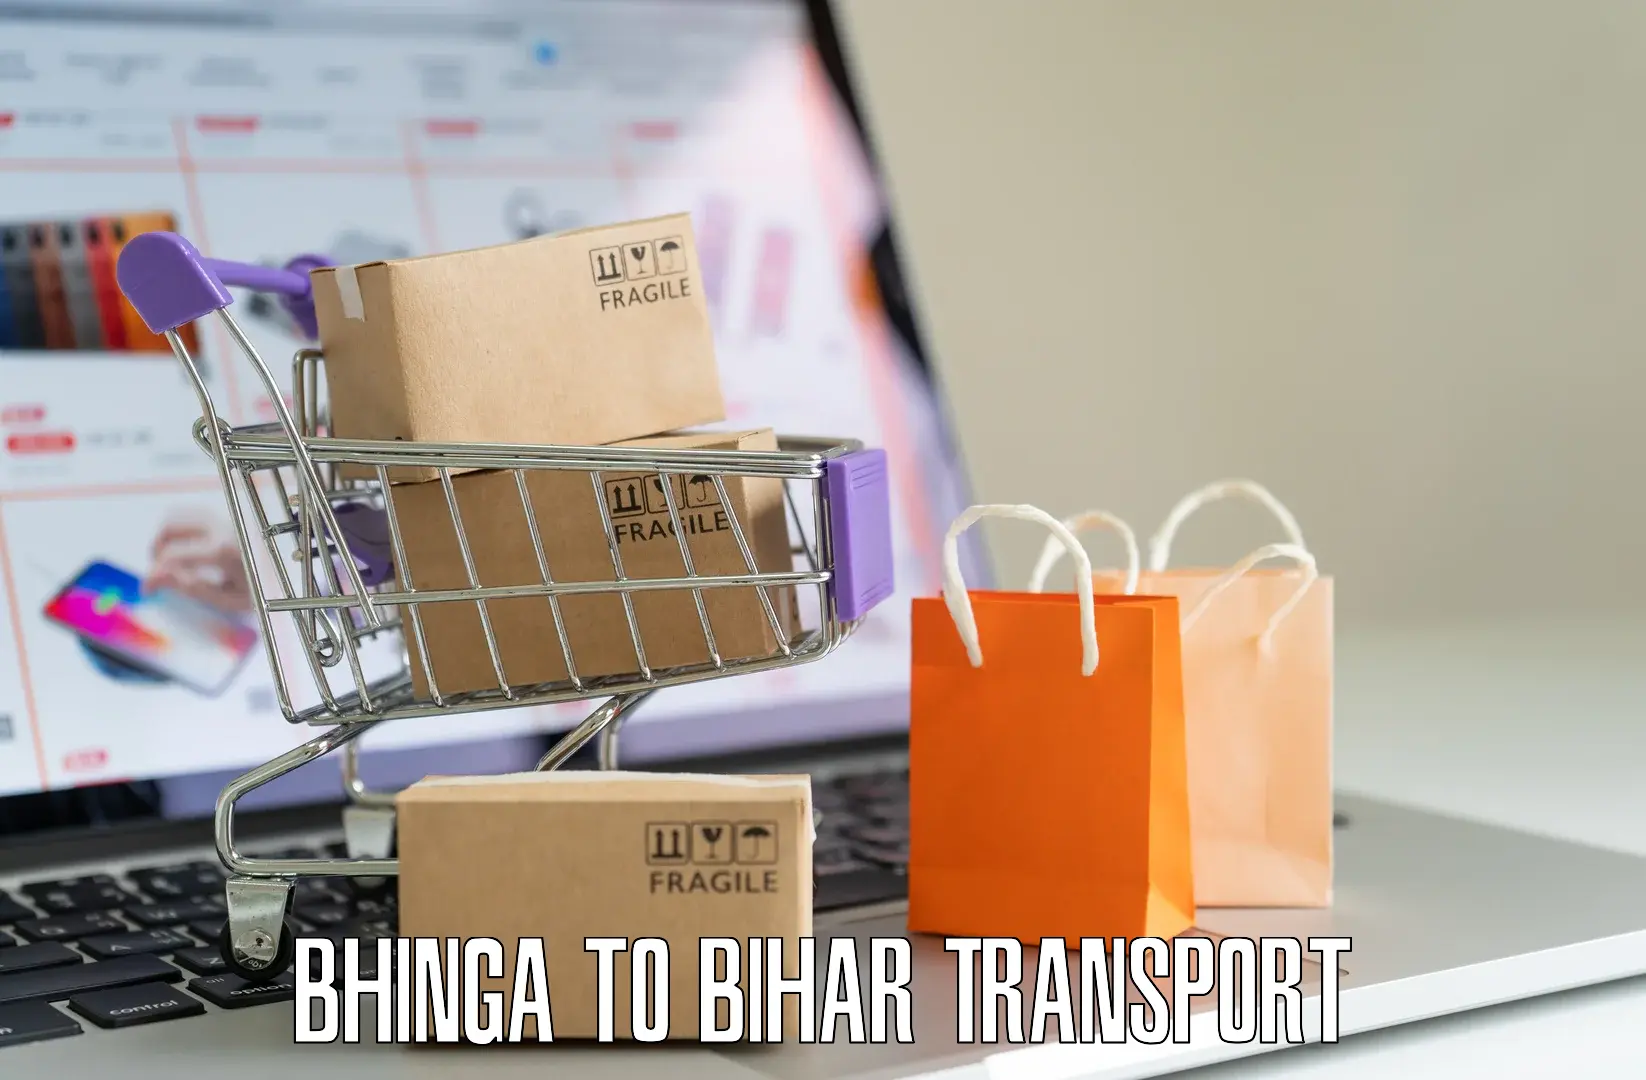 Sending bike to another city Bhinga to Sheohar